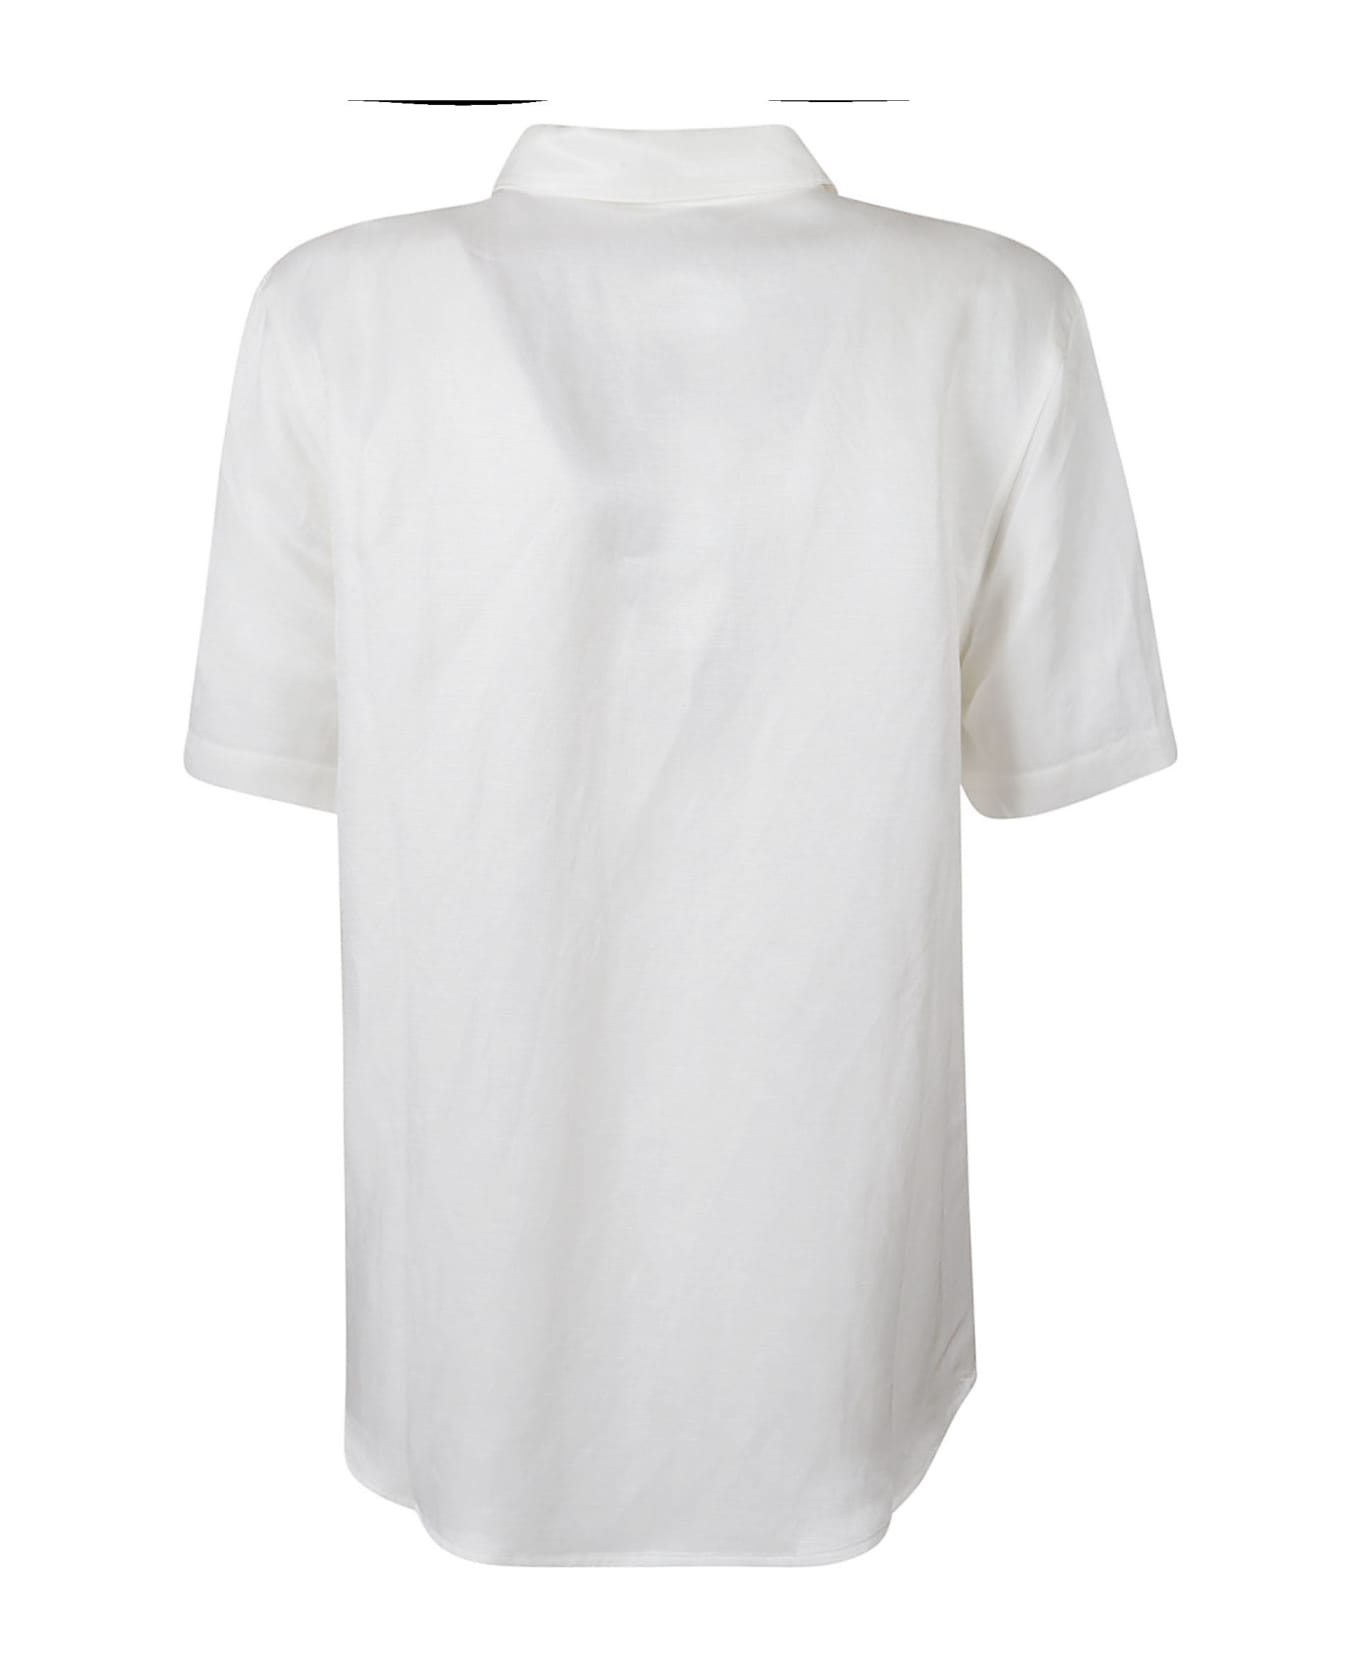 Anine Bing Short-sleeved Plain Shirt - White シャツ